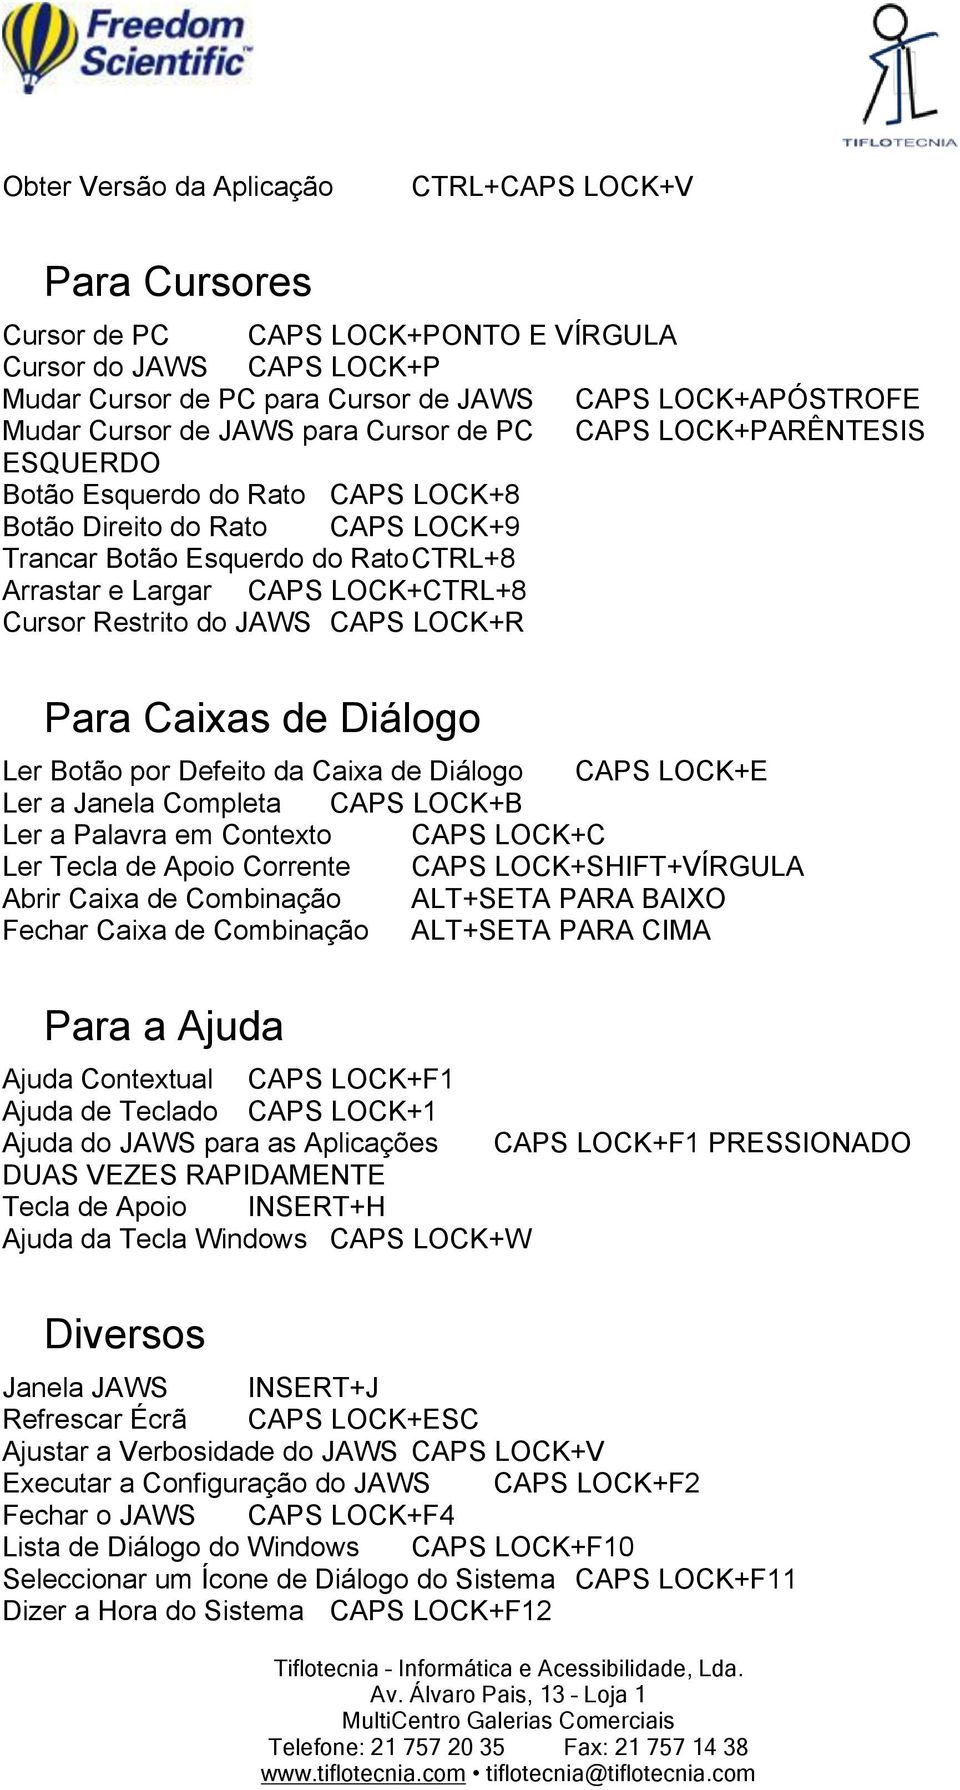 Cursor Restrito do JAWS CAPS LOCK+R Para Caixas de Diálogo Ler Botão por Defeito da Caixa de Diálogo CAPS LOCK+E Ler a Janela Completa CAPS LOCK+B Ler a Palavra em Contexto CAPS LOCK+C Ler Tecla de